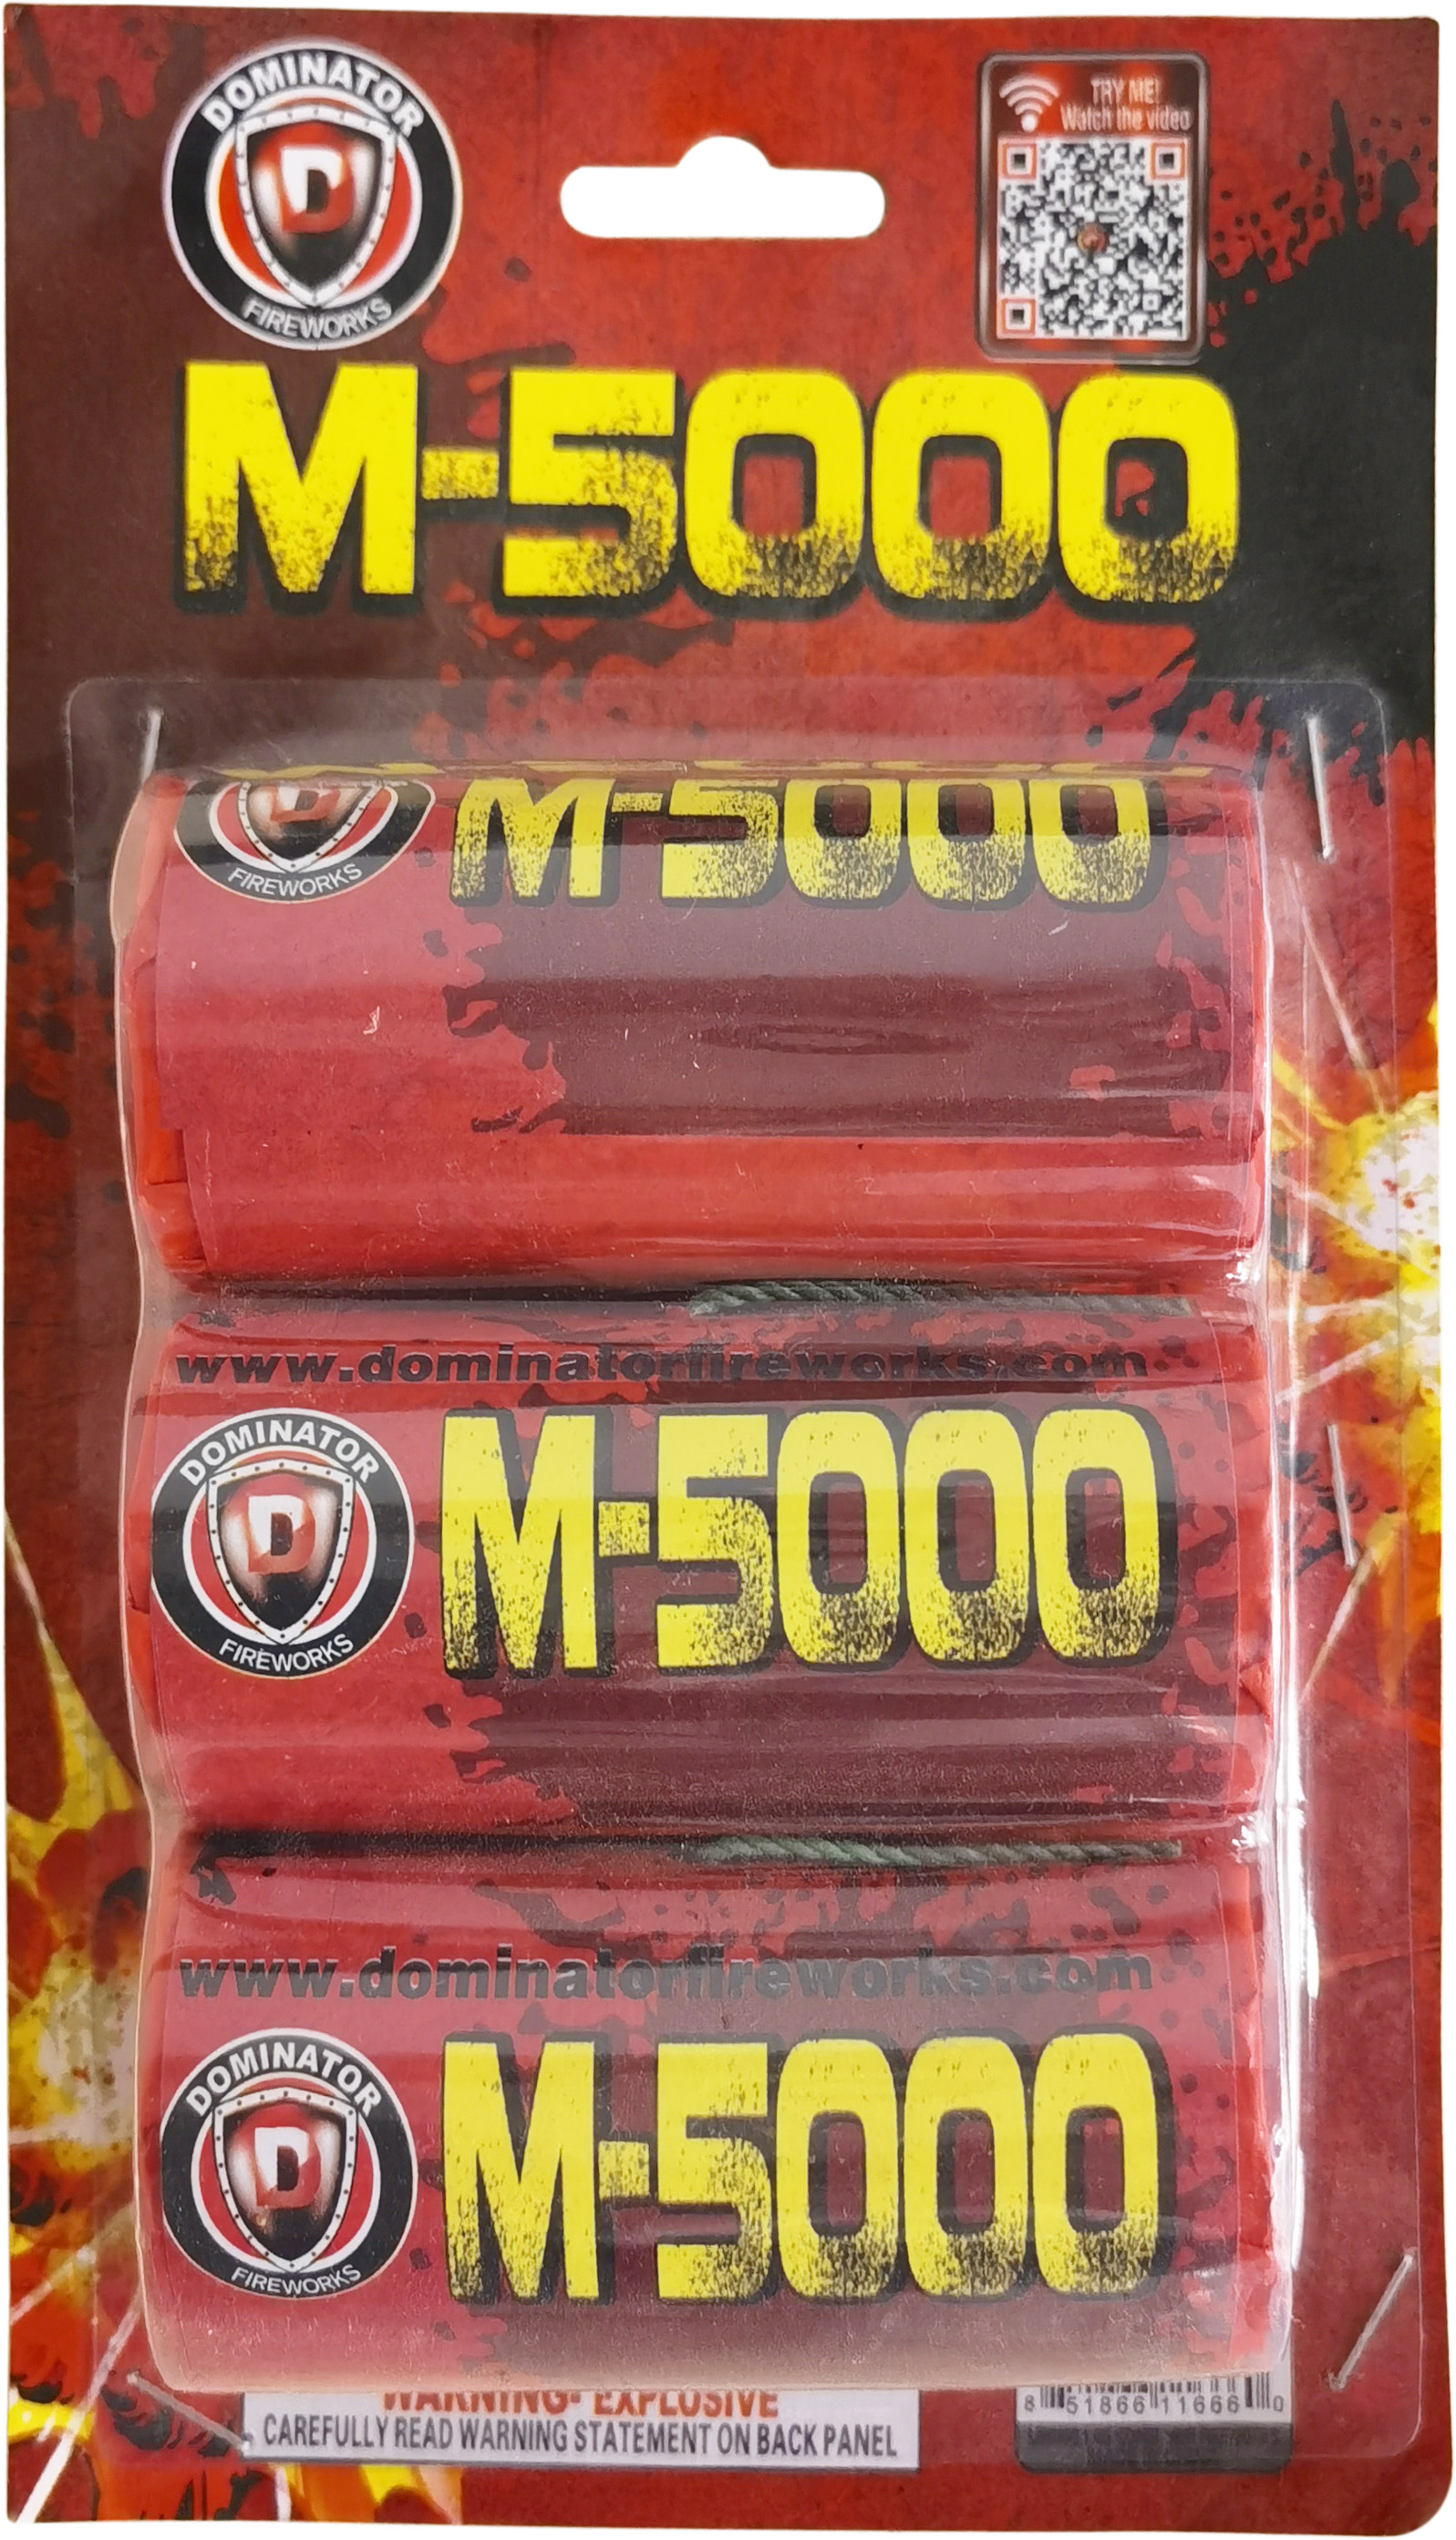 M-5000 Firecracker